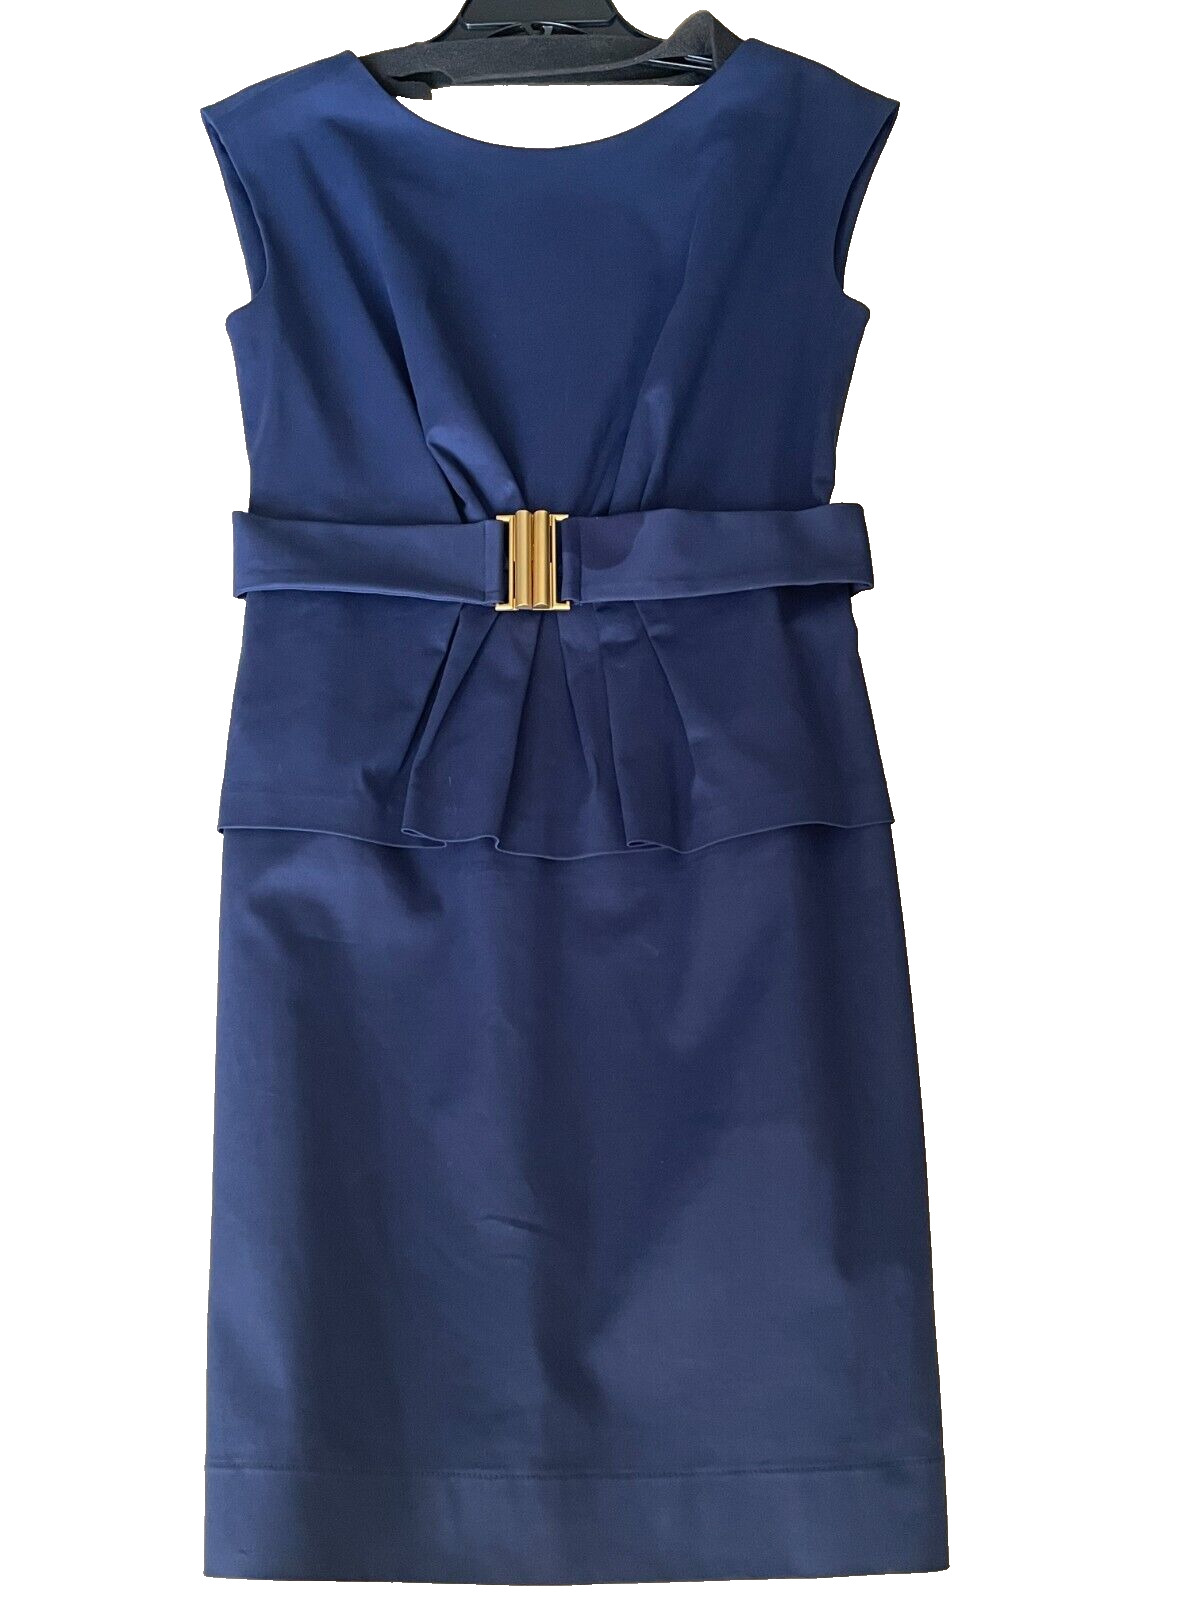 SHOSHANNA Navy Dress with Peplum Sleeveless Size … - image 2